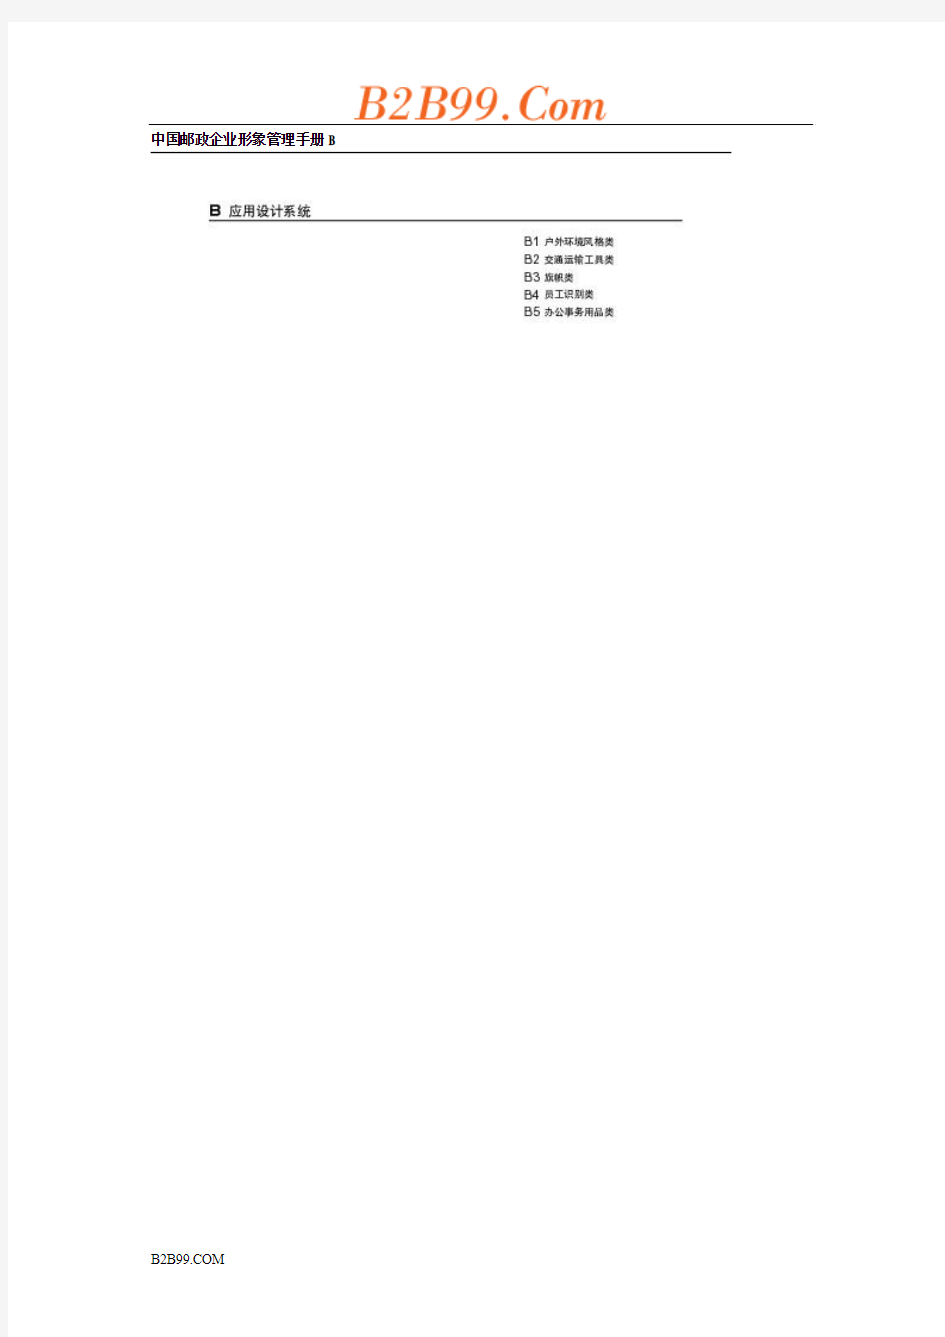 中国邮政企业形象管理手册B